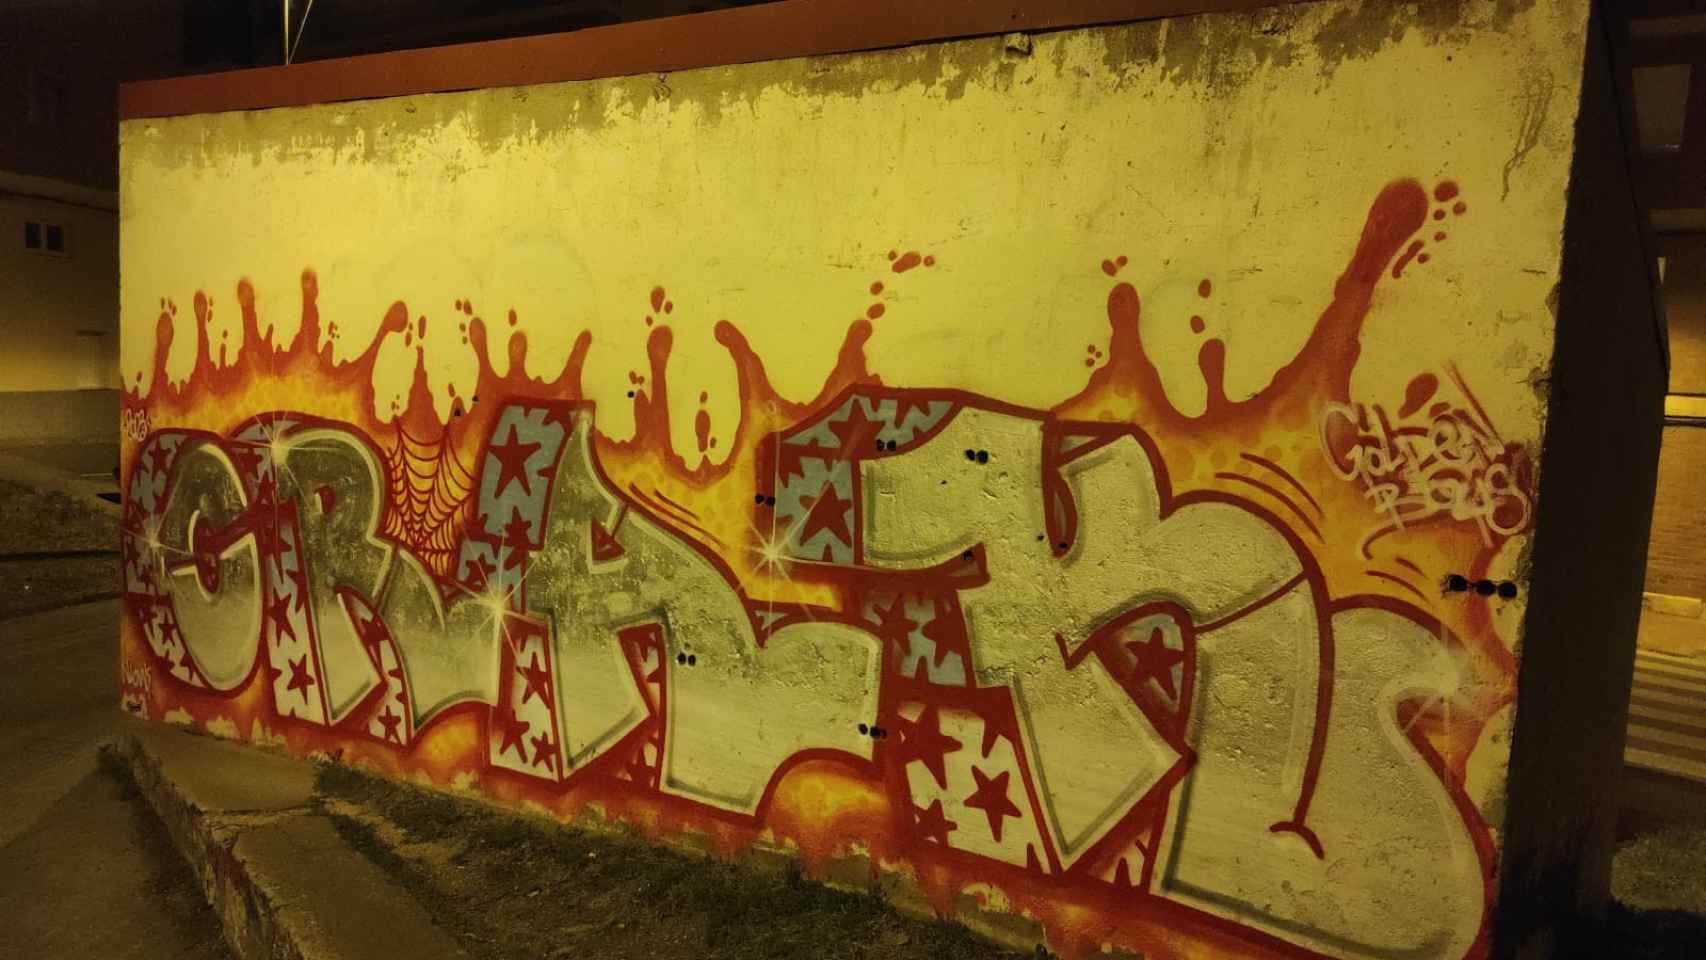 Otro de sus grafitis en el barrio de Pantoja antes de ser borrado